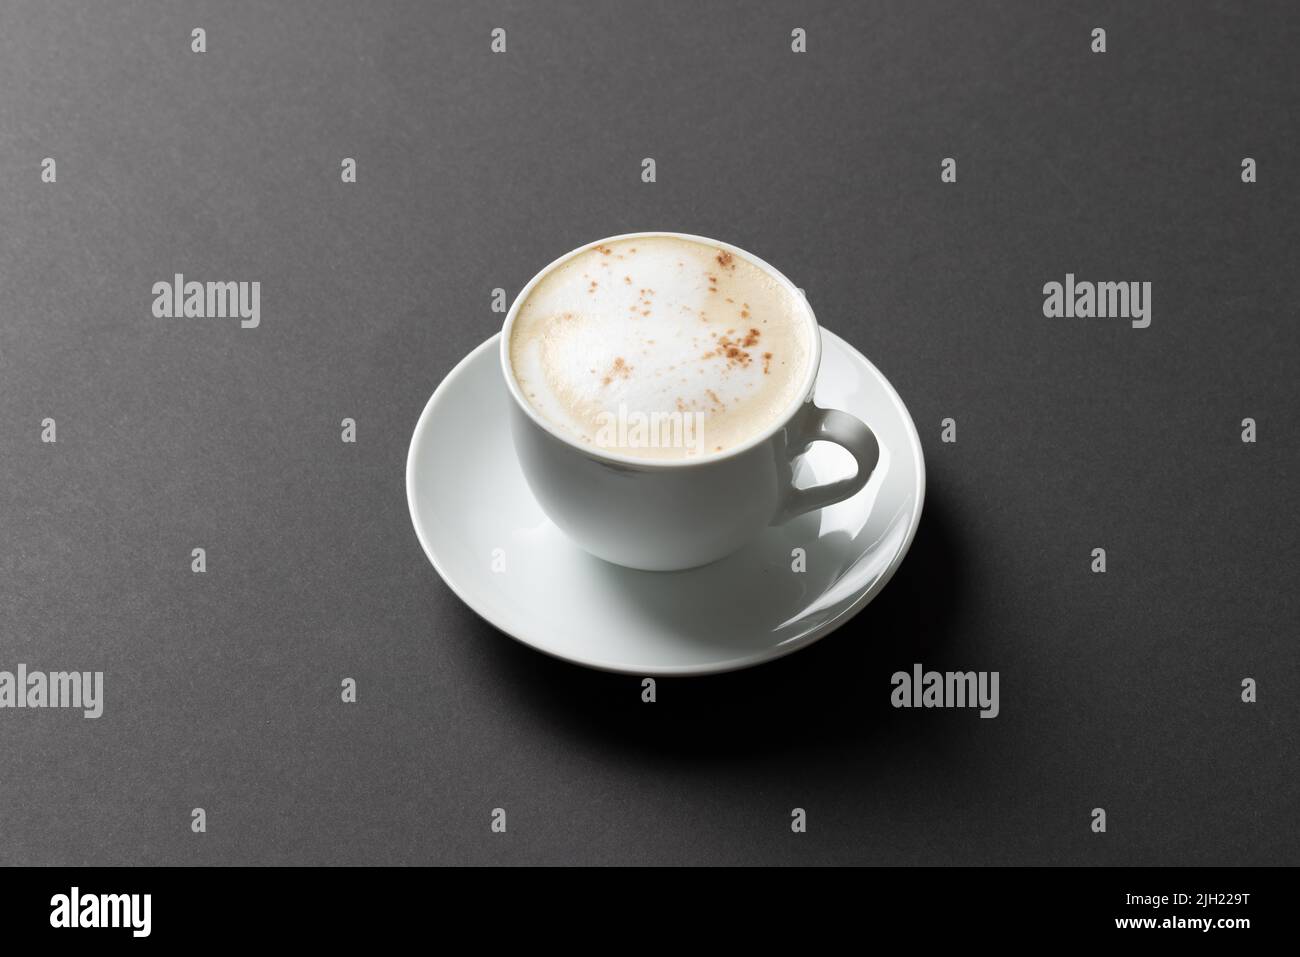 Immagine di una tazza di caffè bianca con latte su sfondo nero Foto Stock